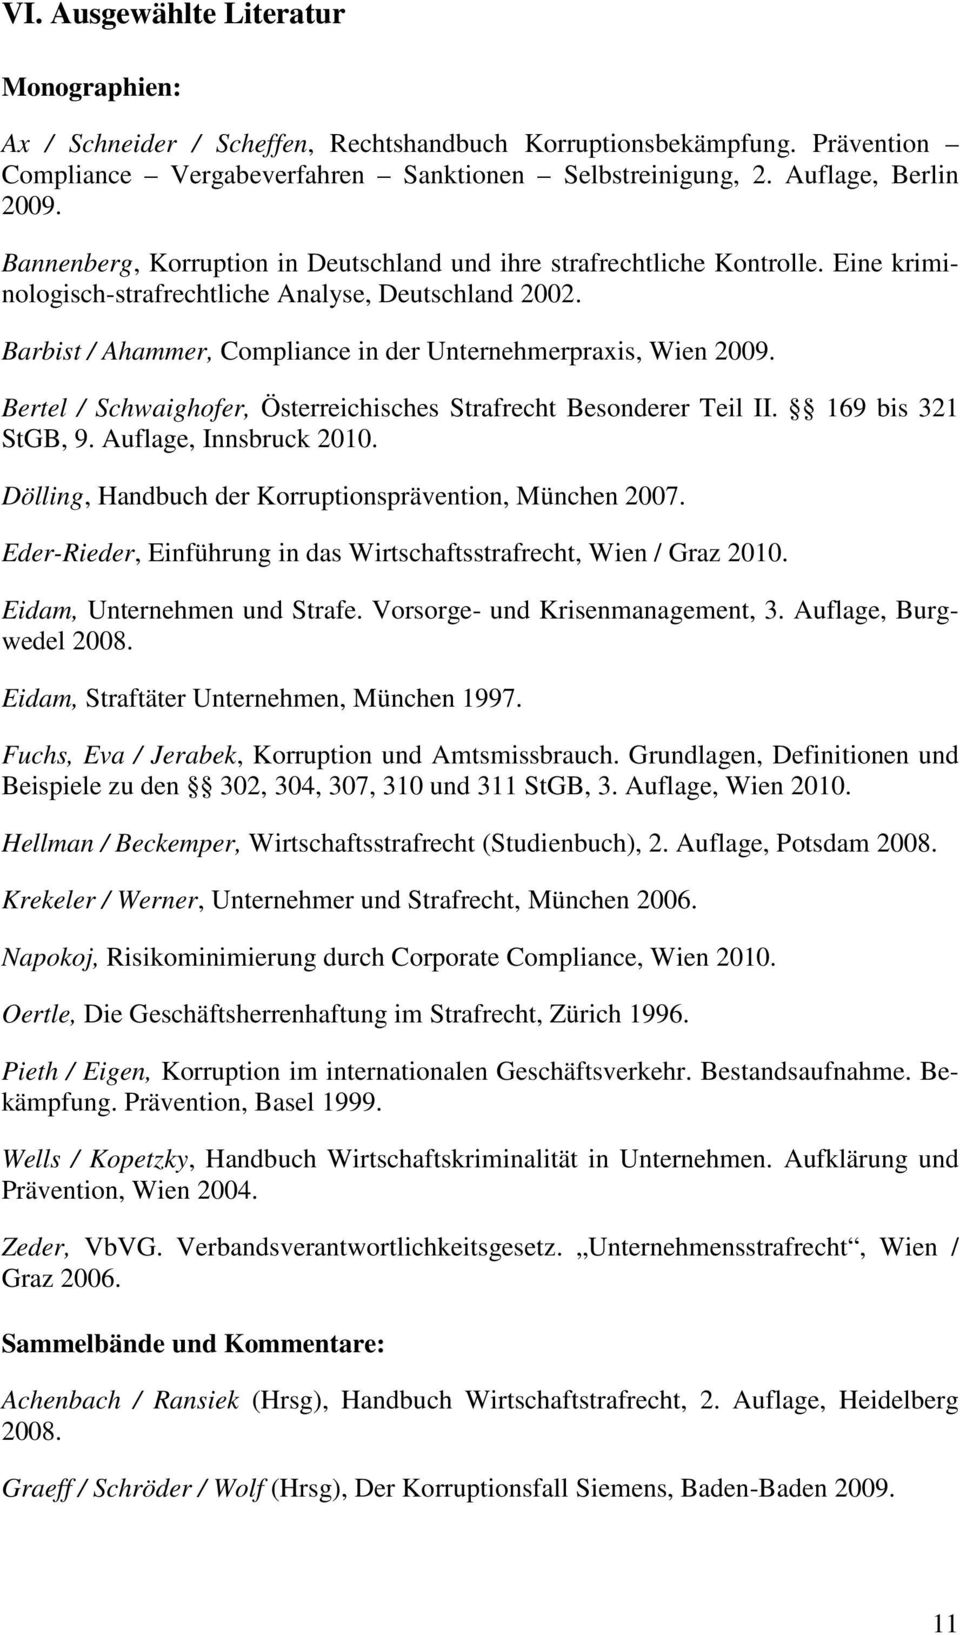 Barbist / Ahammer, Compliance in der Unternehmerpraxis, Wien 2009. Bertel / Schwaighofer, Österreichisches Strafrecht Besonderer Teil II. 169 bis 321 StGB, 9. Auflage, Innsbruck 2010.